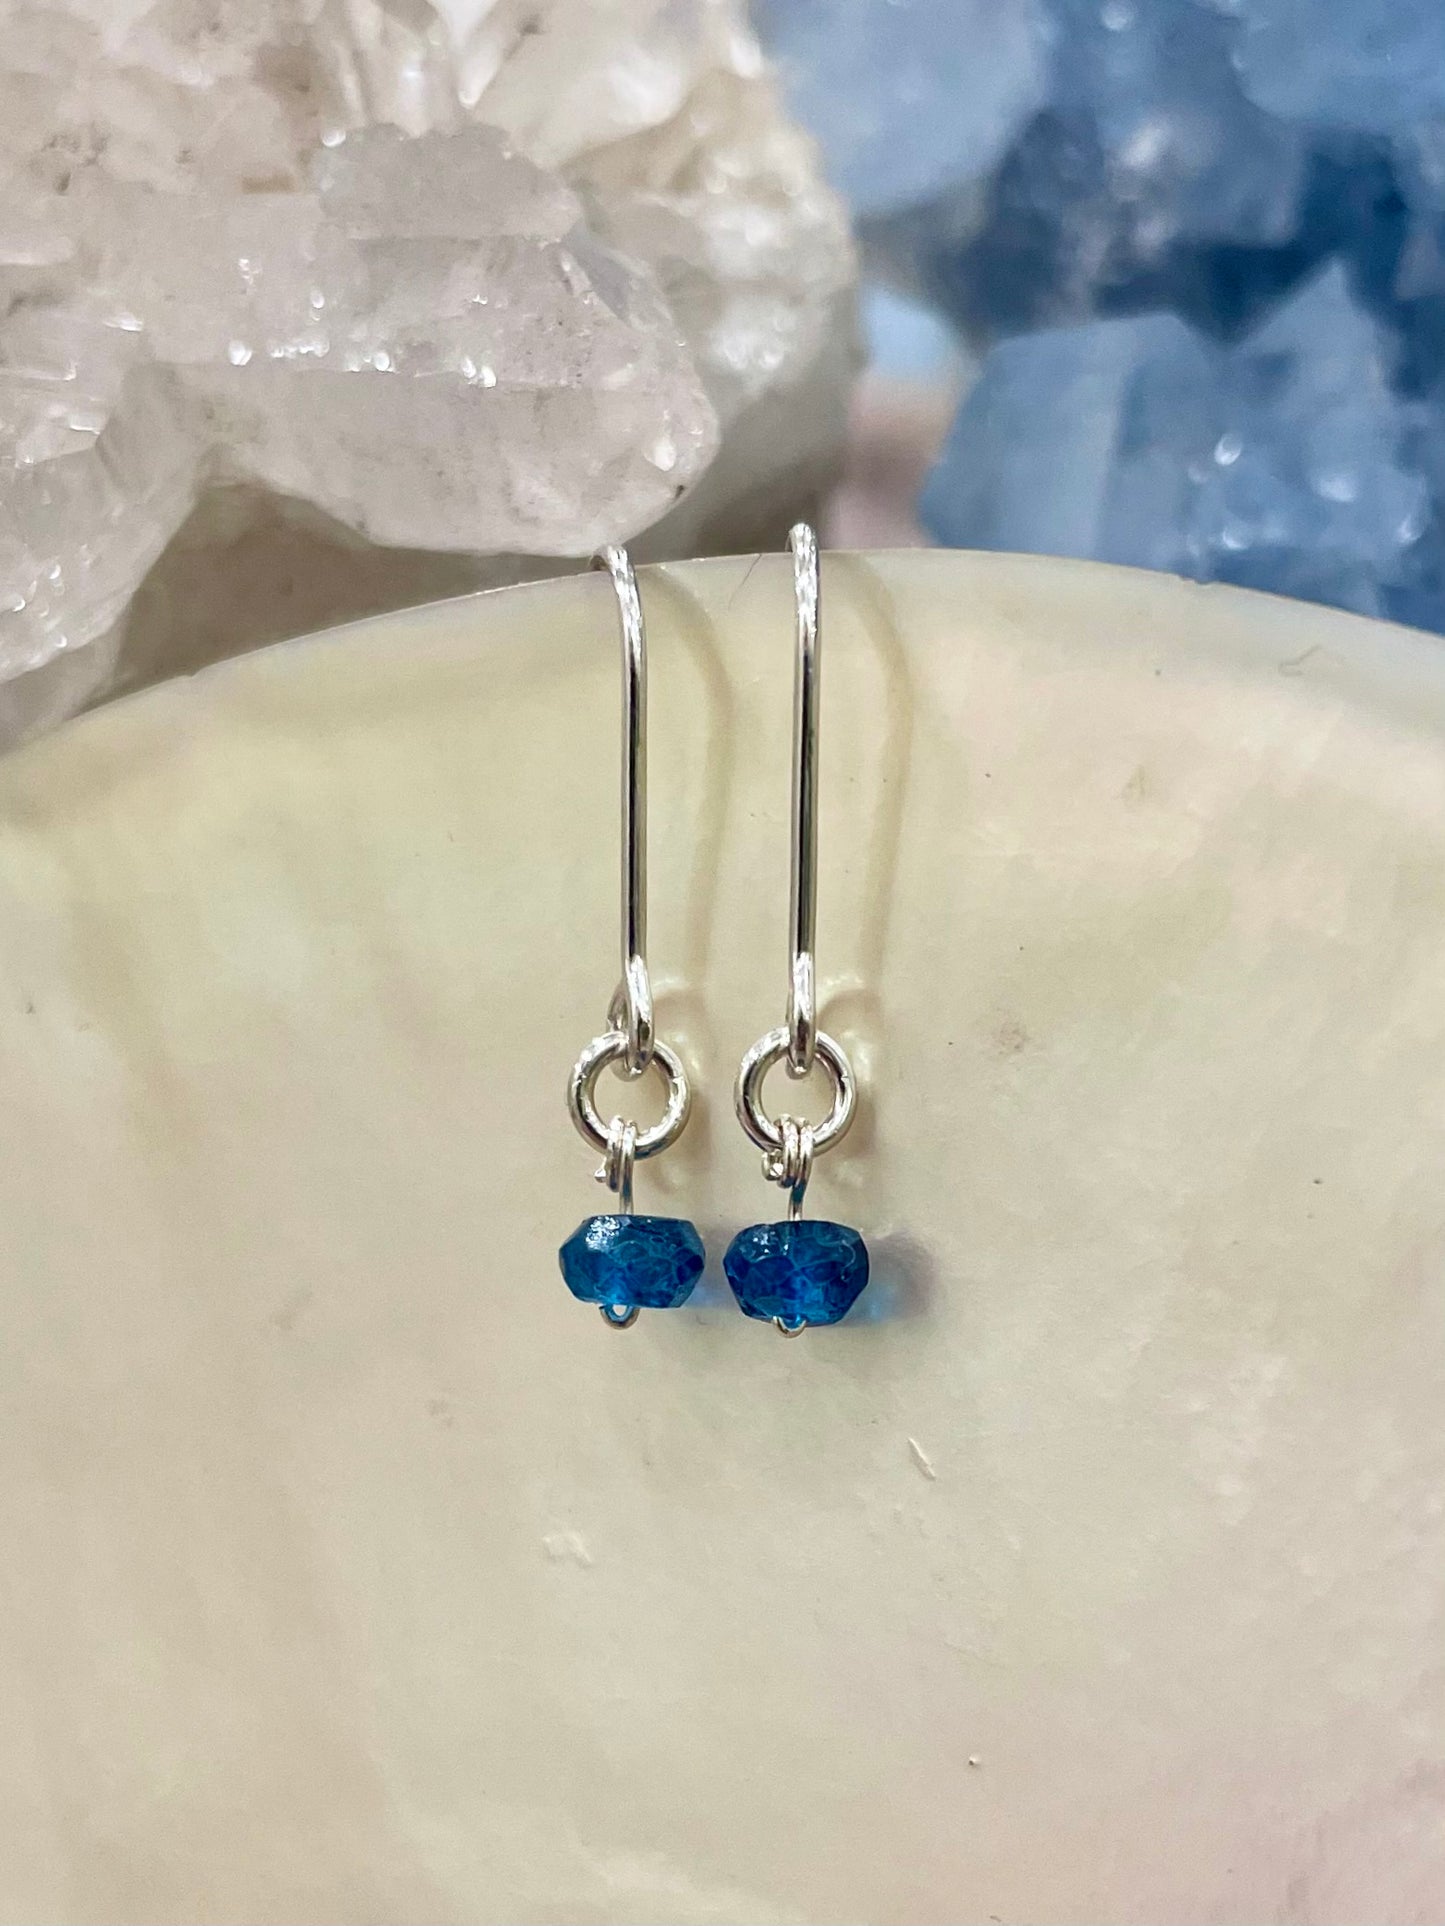 Mini gemstone hook earrings, london blue topaz earrings, london blue topaz earrings in silver